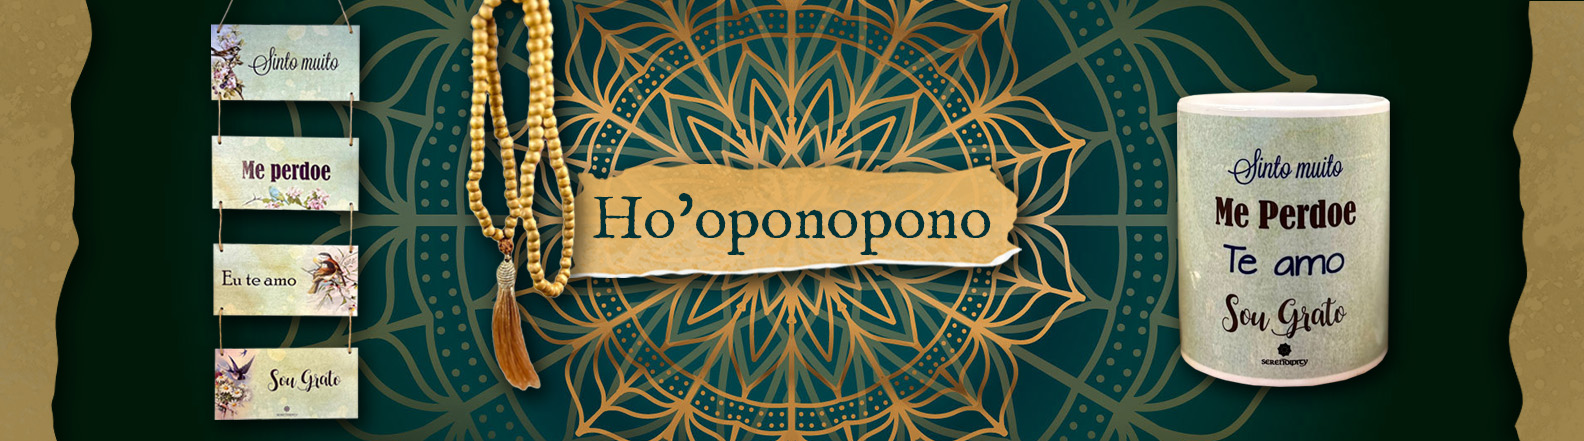 banner Ho’oponopono